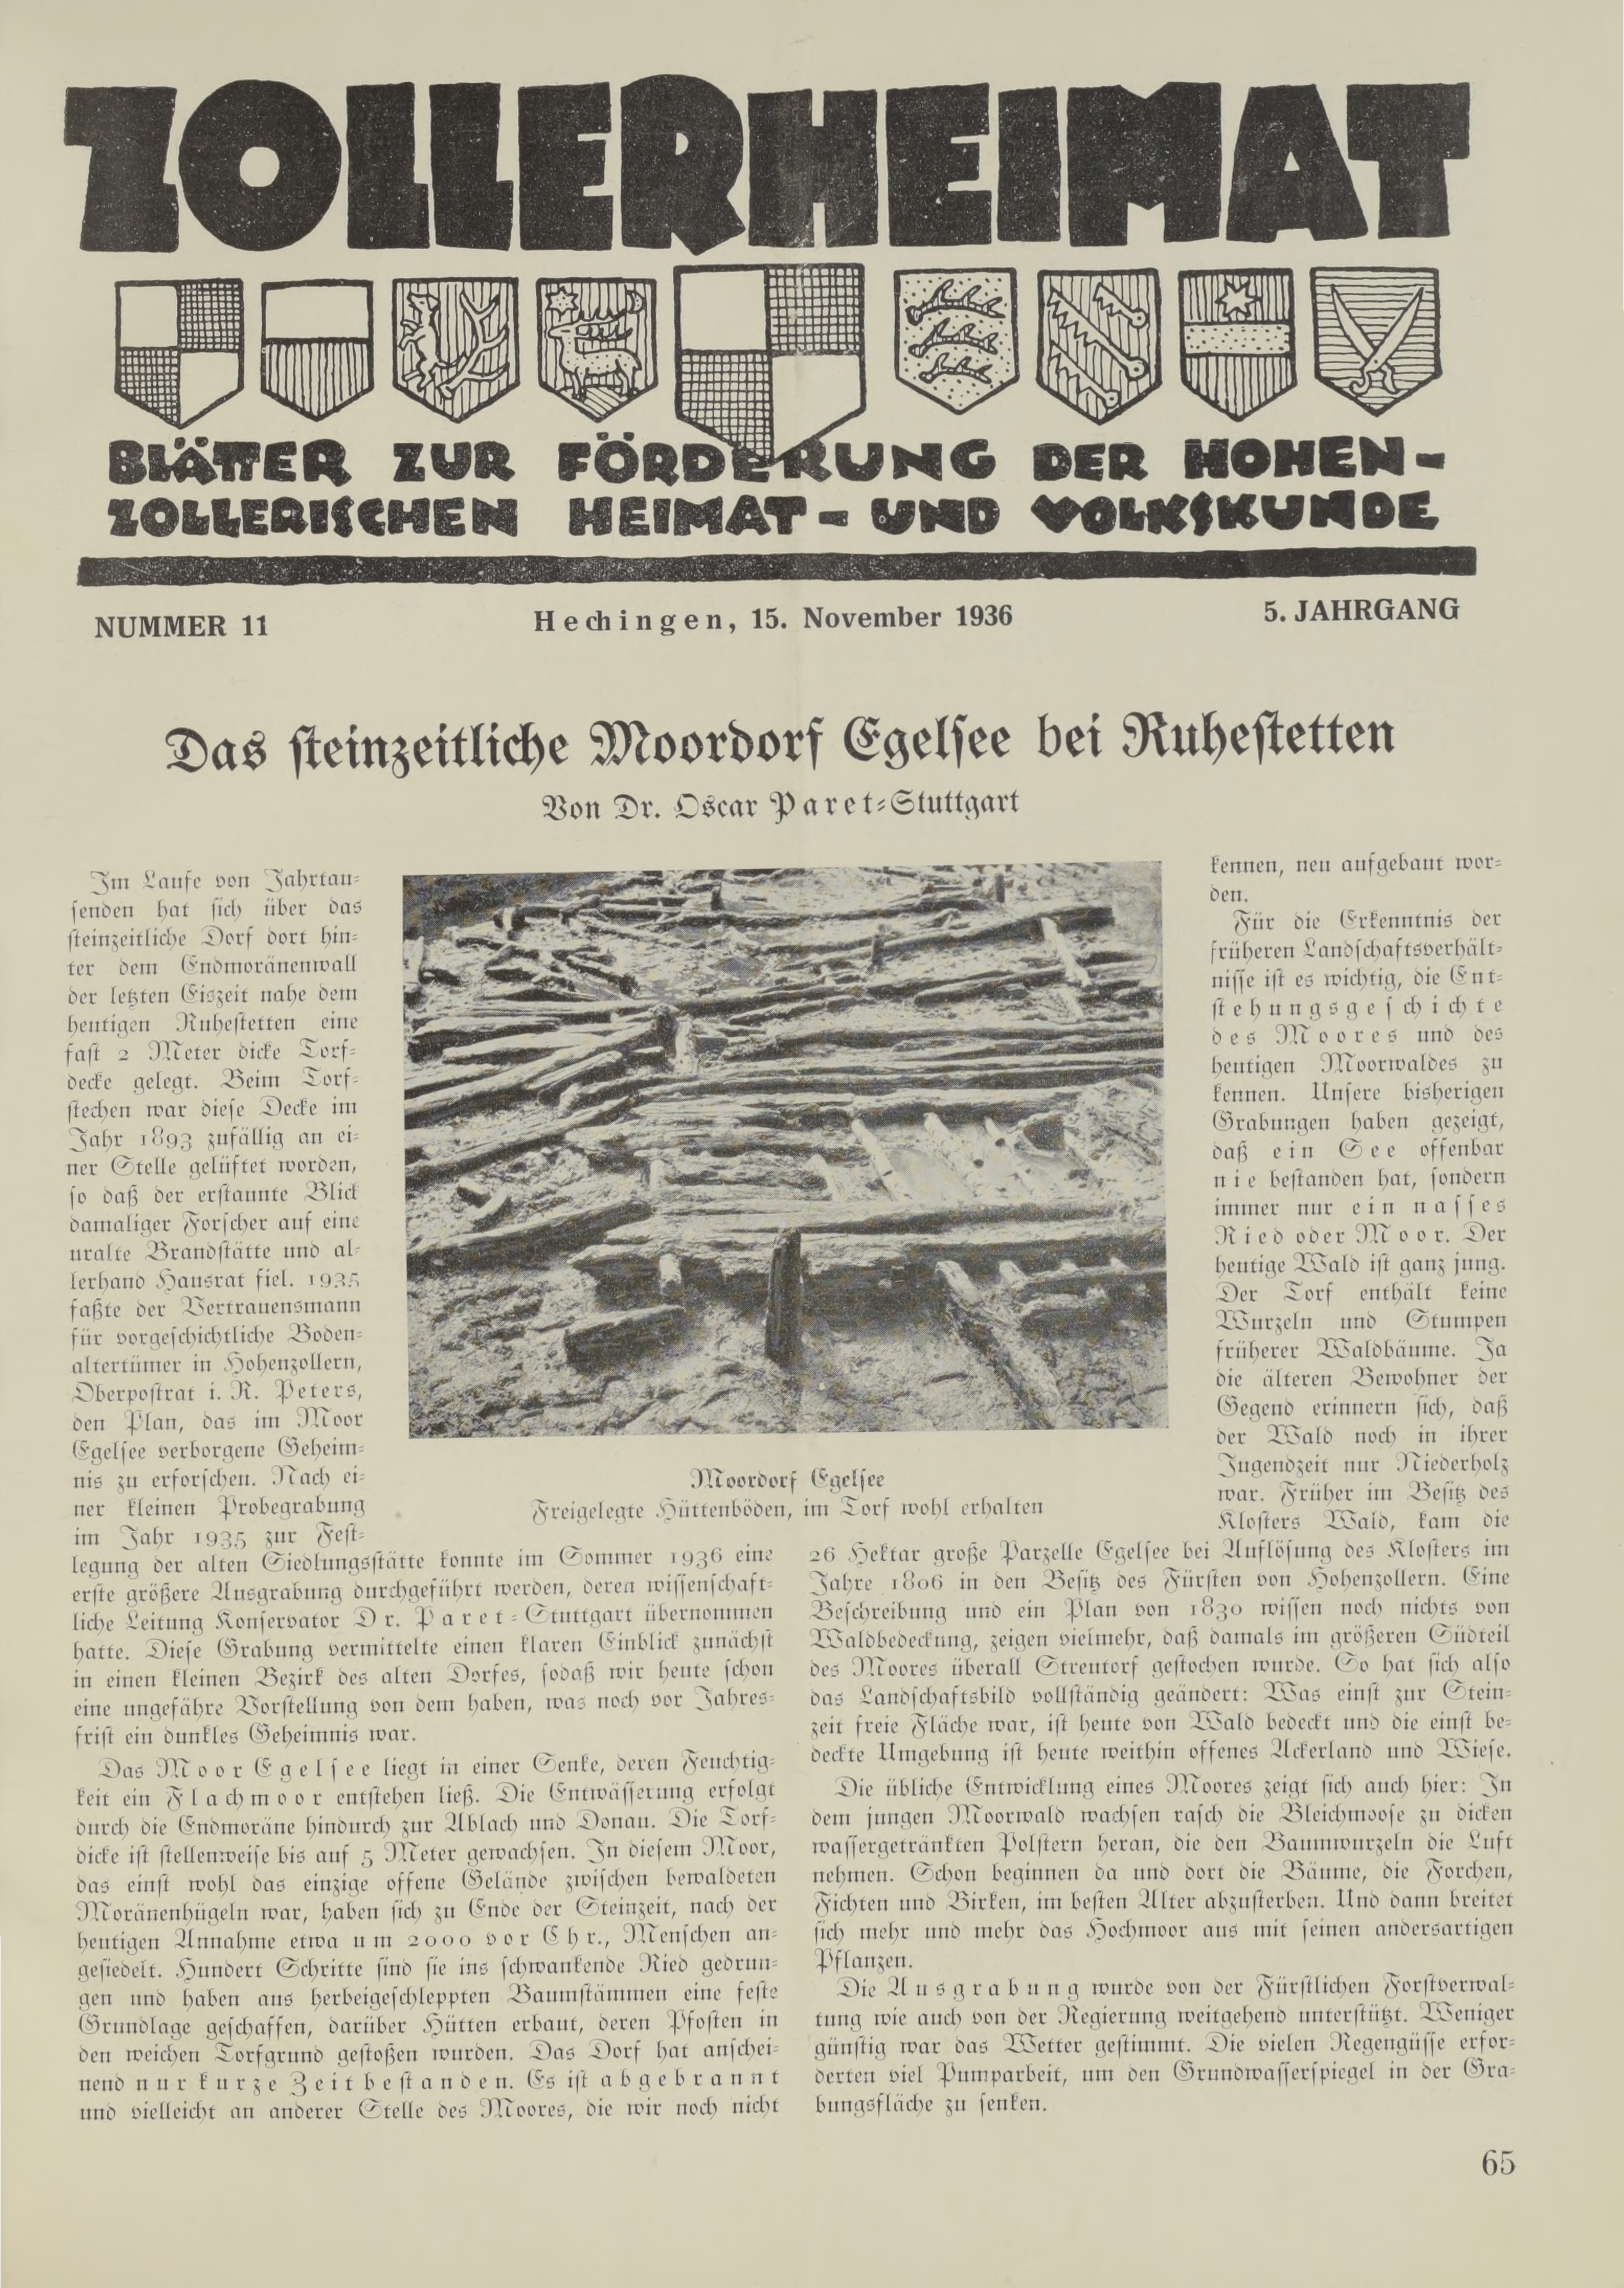                     Ansehen Bd. 5 Nr. 11 (1936): Zollerheimat
                